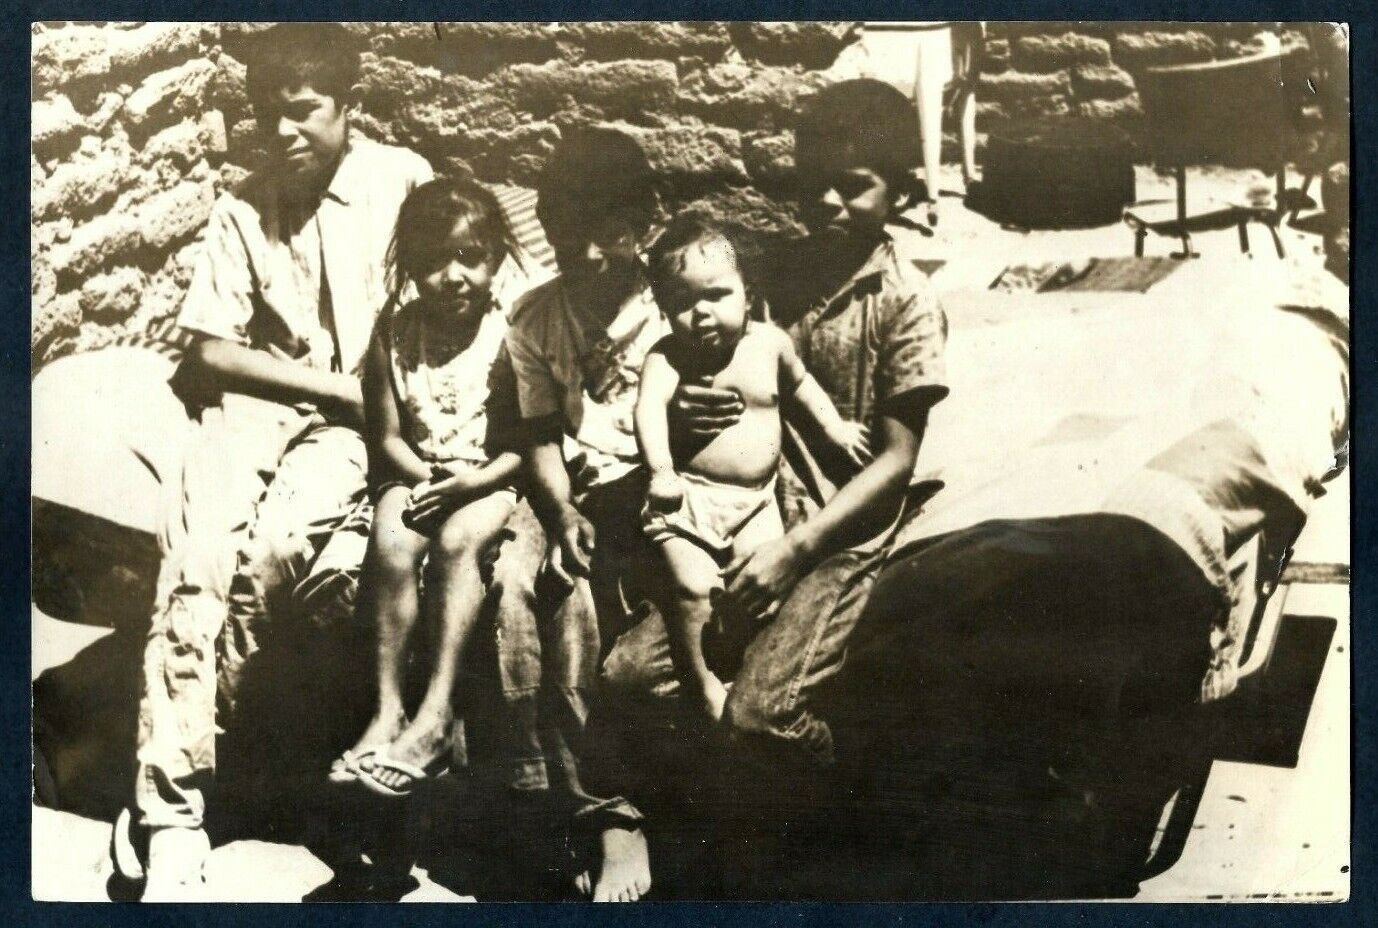 LATIN AMERICAN POOR CHILDREN SOCIAL EXCLUSION 1940s VINTAGE ORIGINAL Photo Y 200